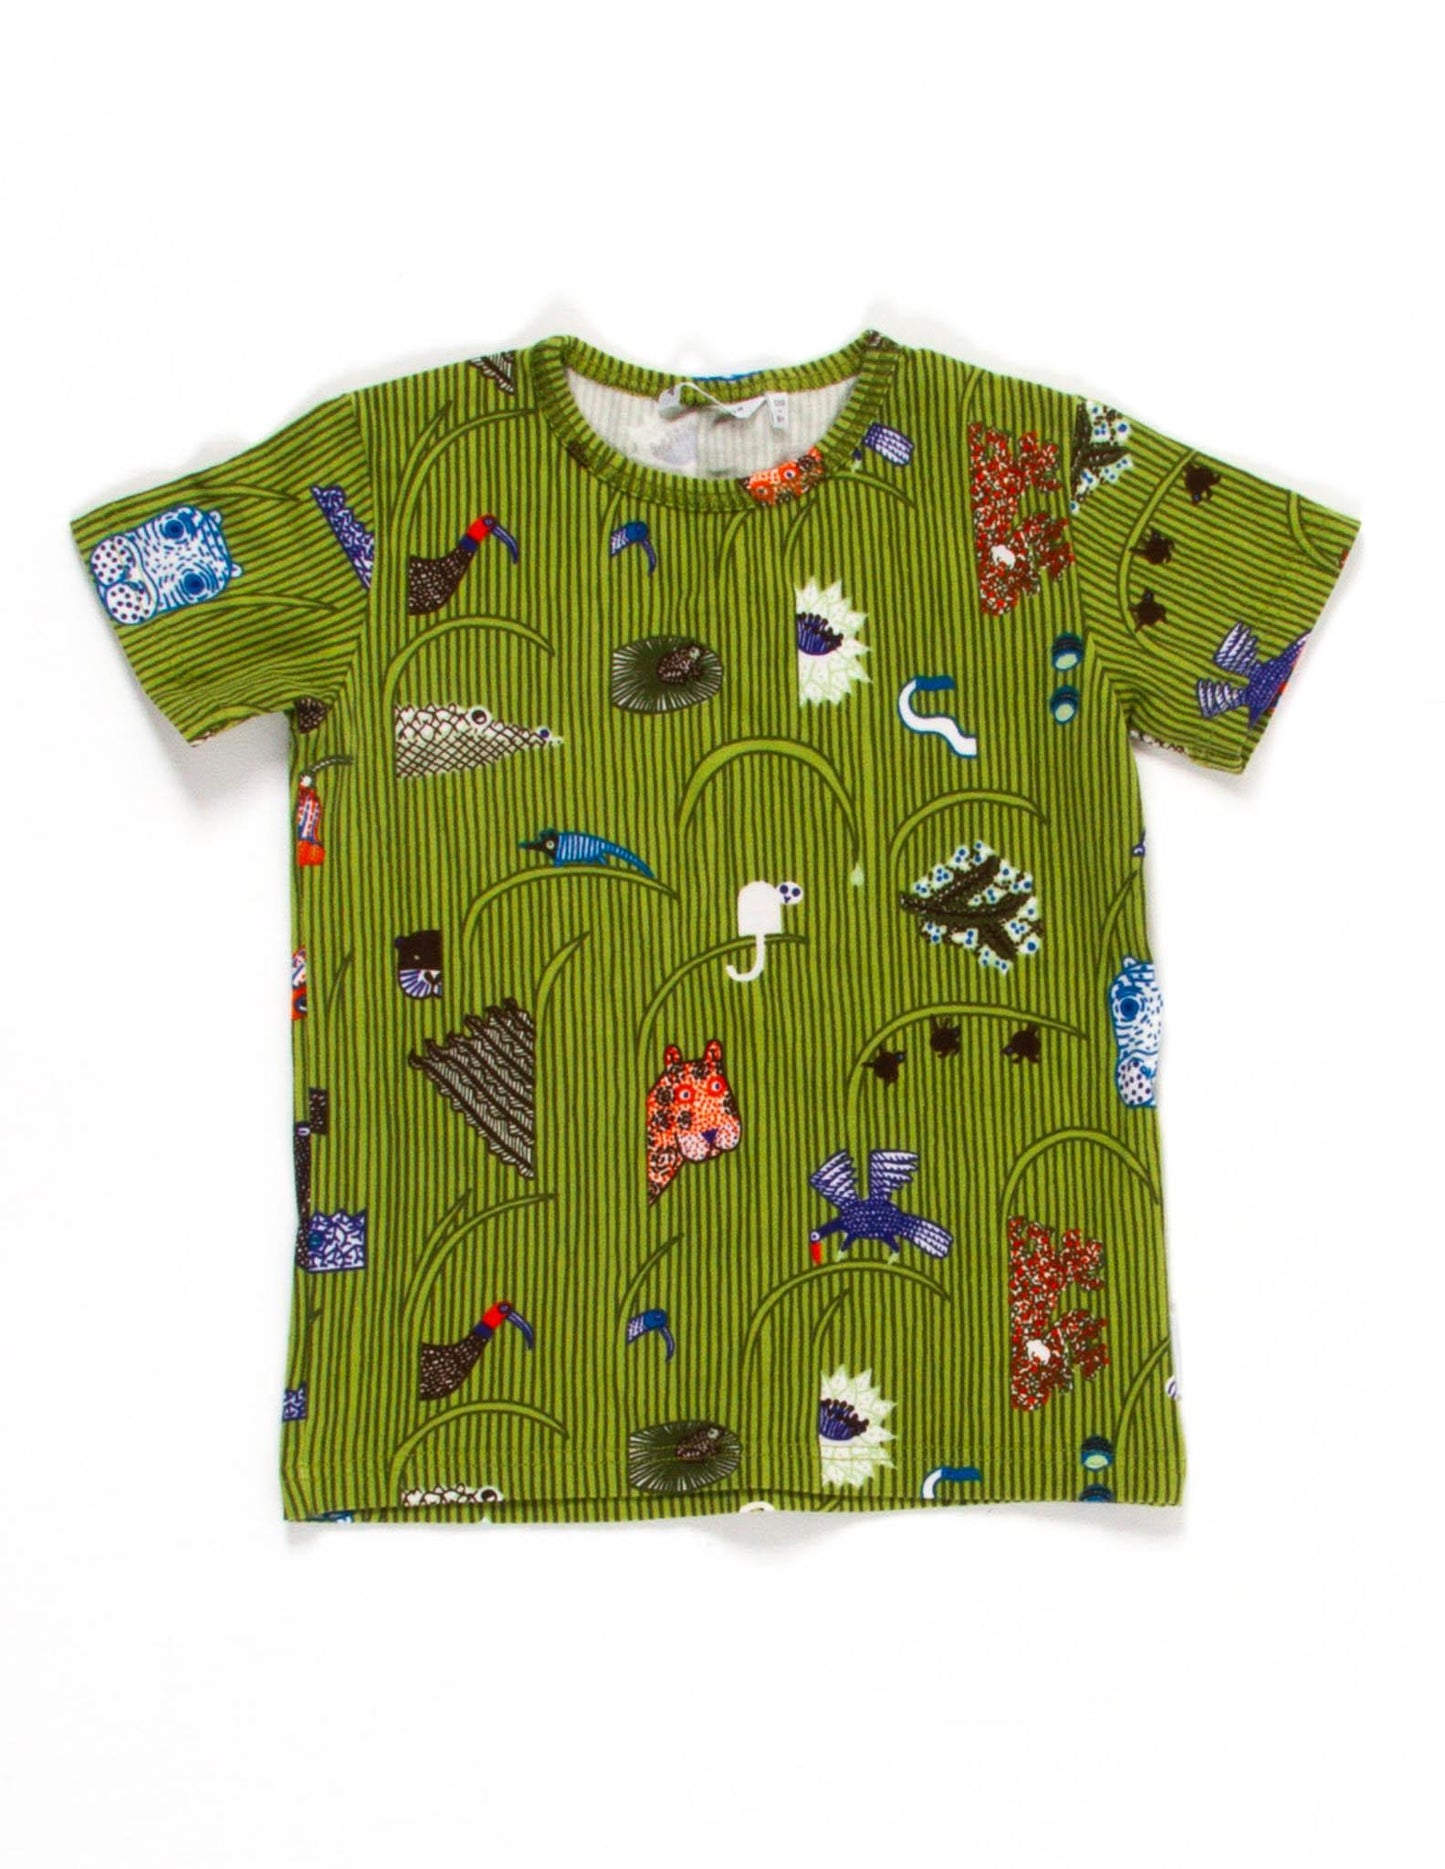 Marimekko Safari kid's t-shirt